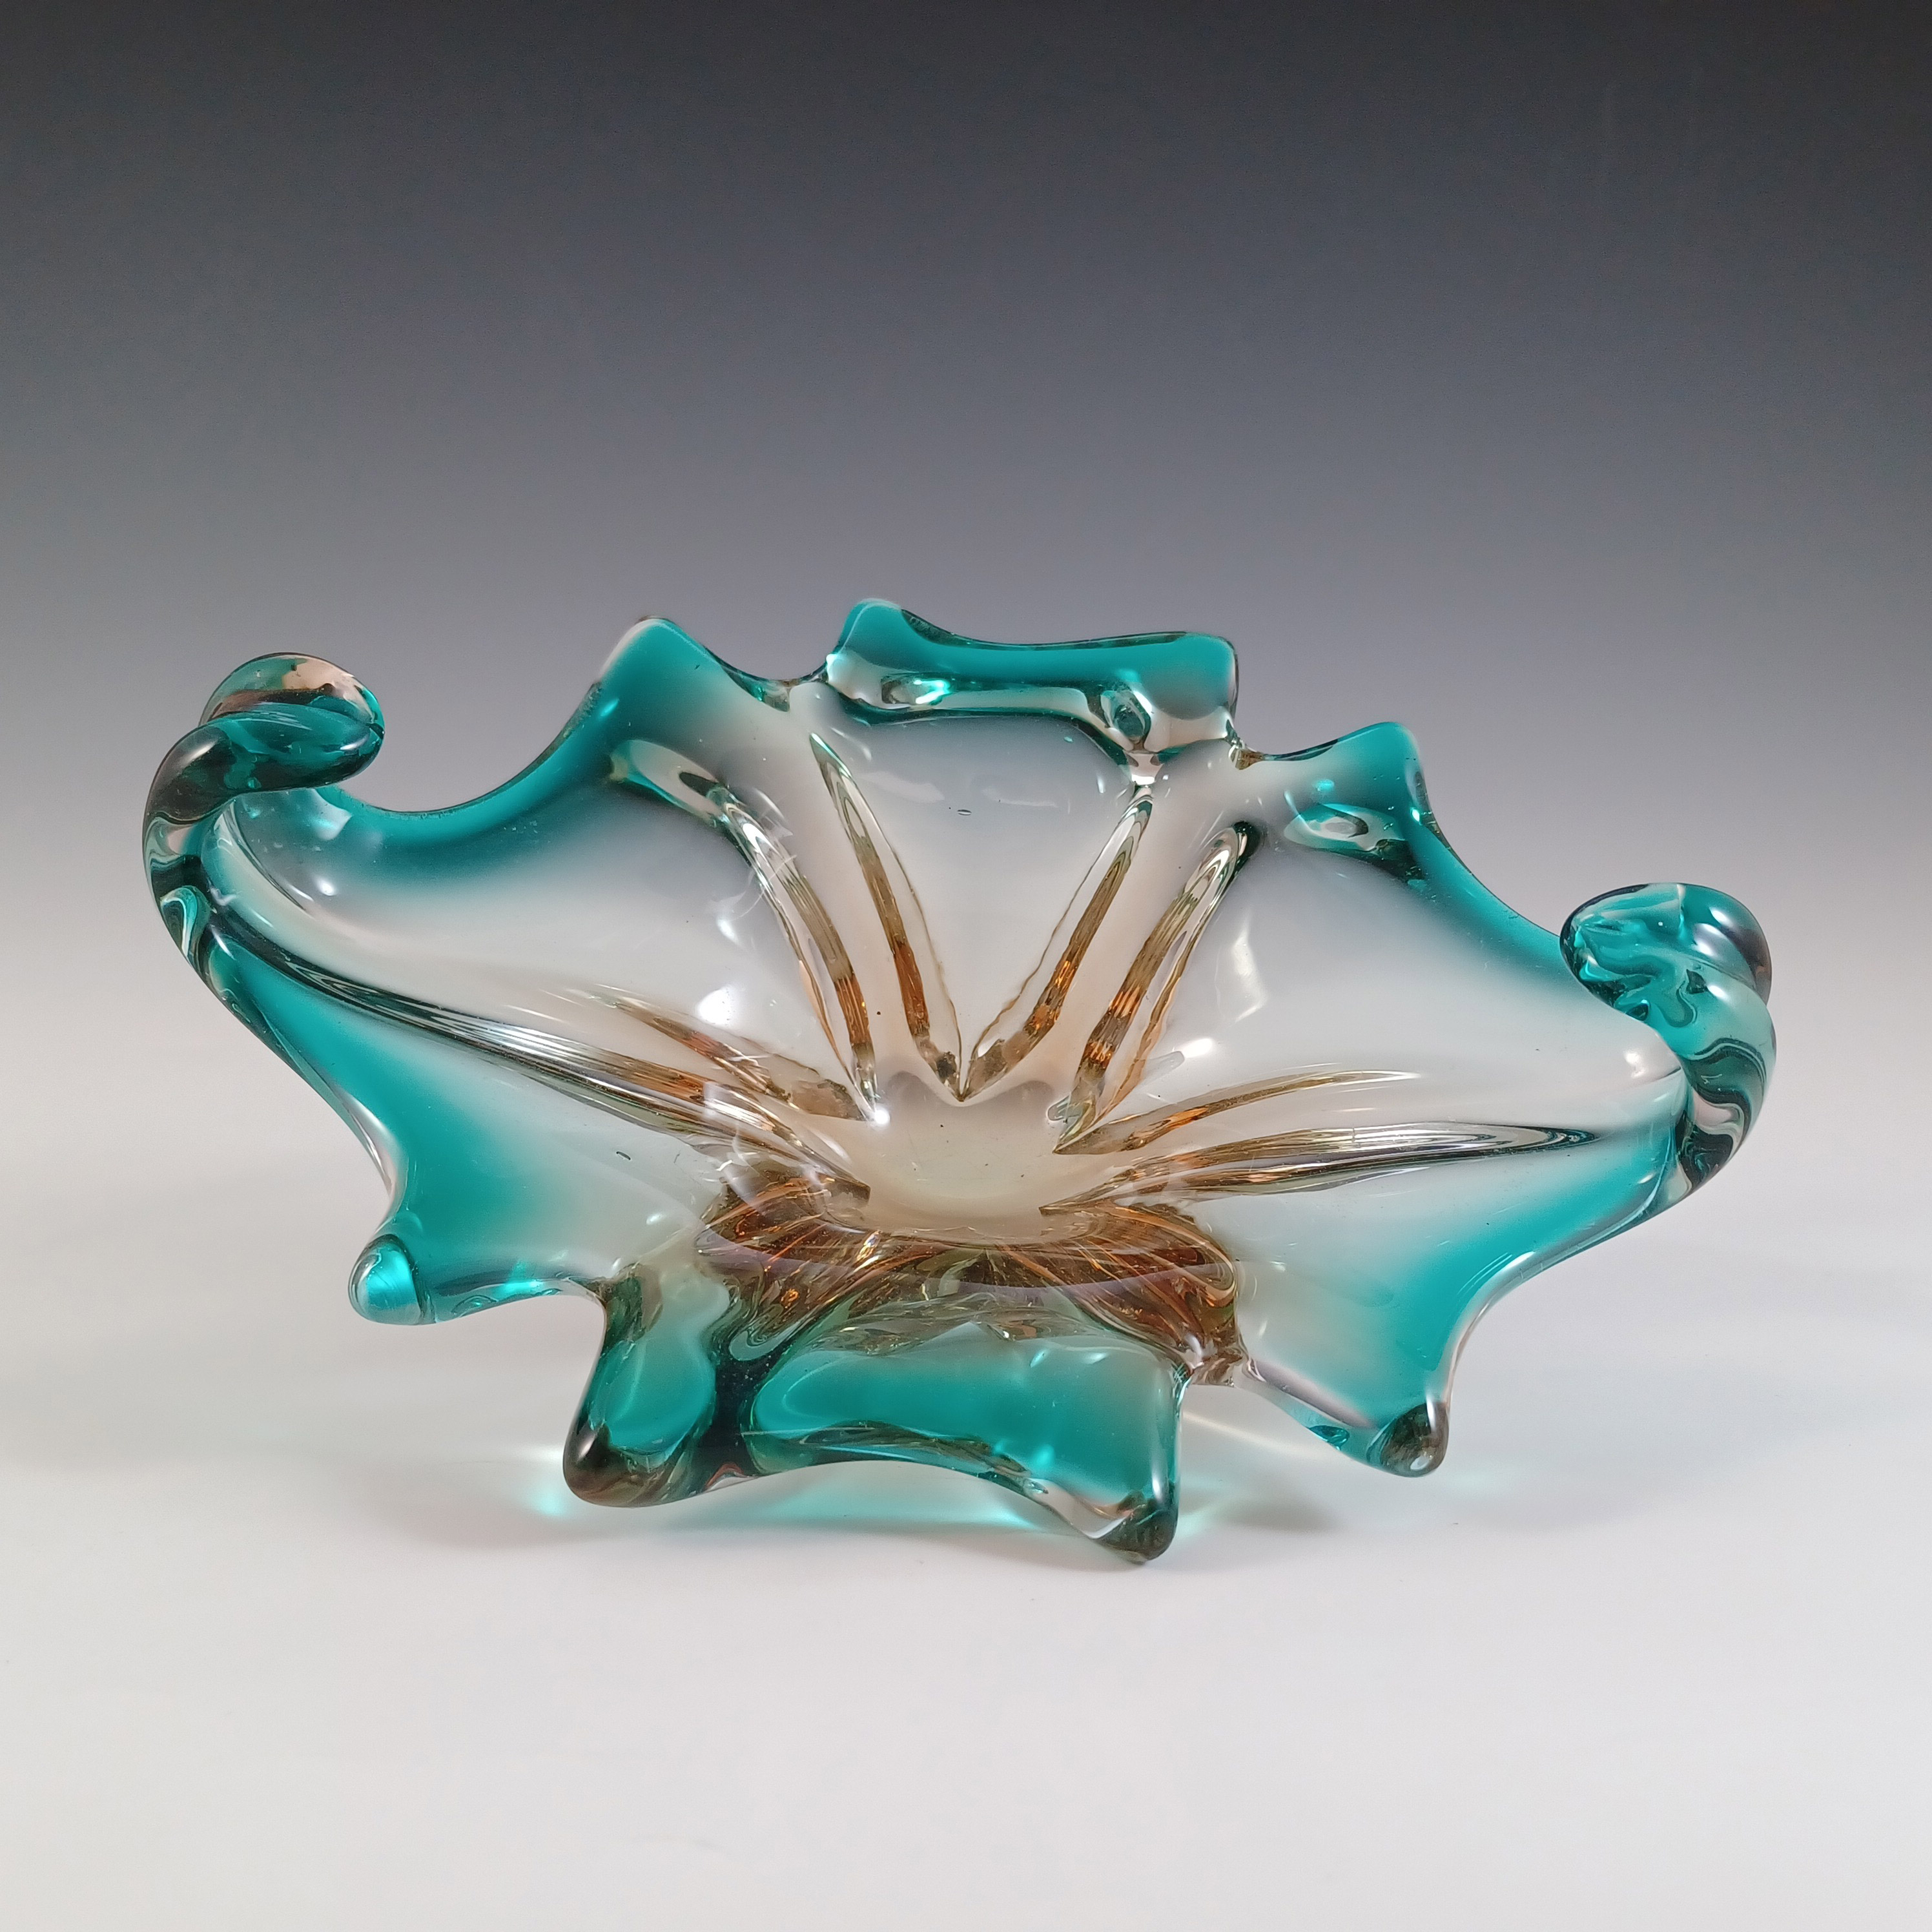 Cristallo Venezia CCC Murano Green & Amber Sommerso Glass Bowl - Click Image to Close